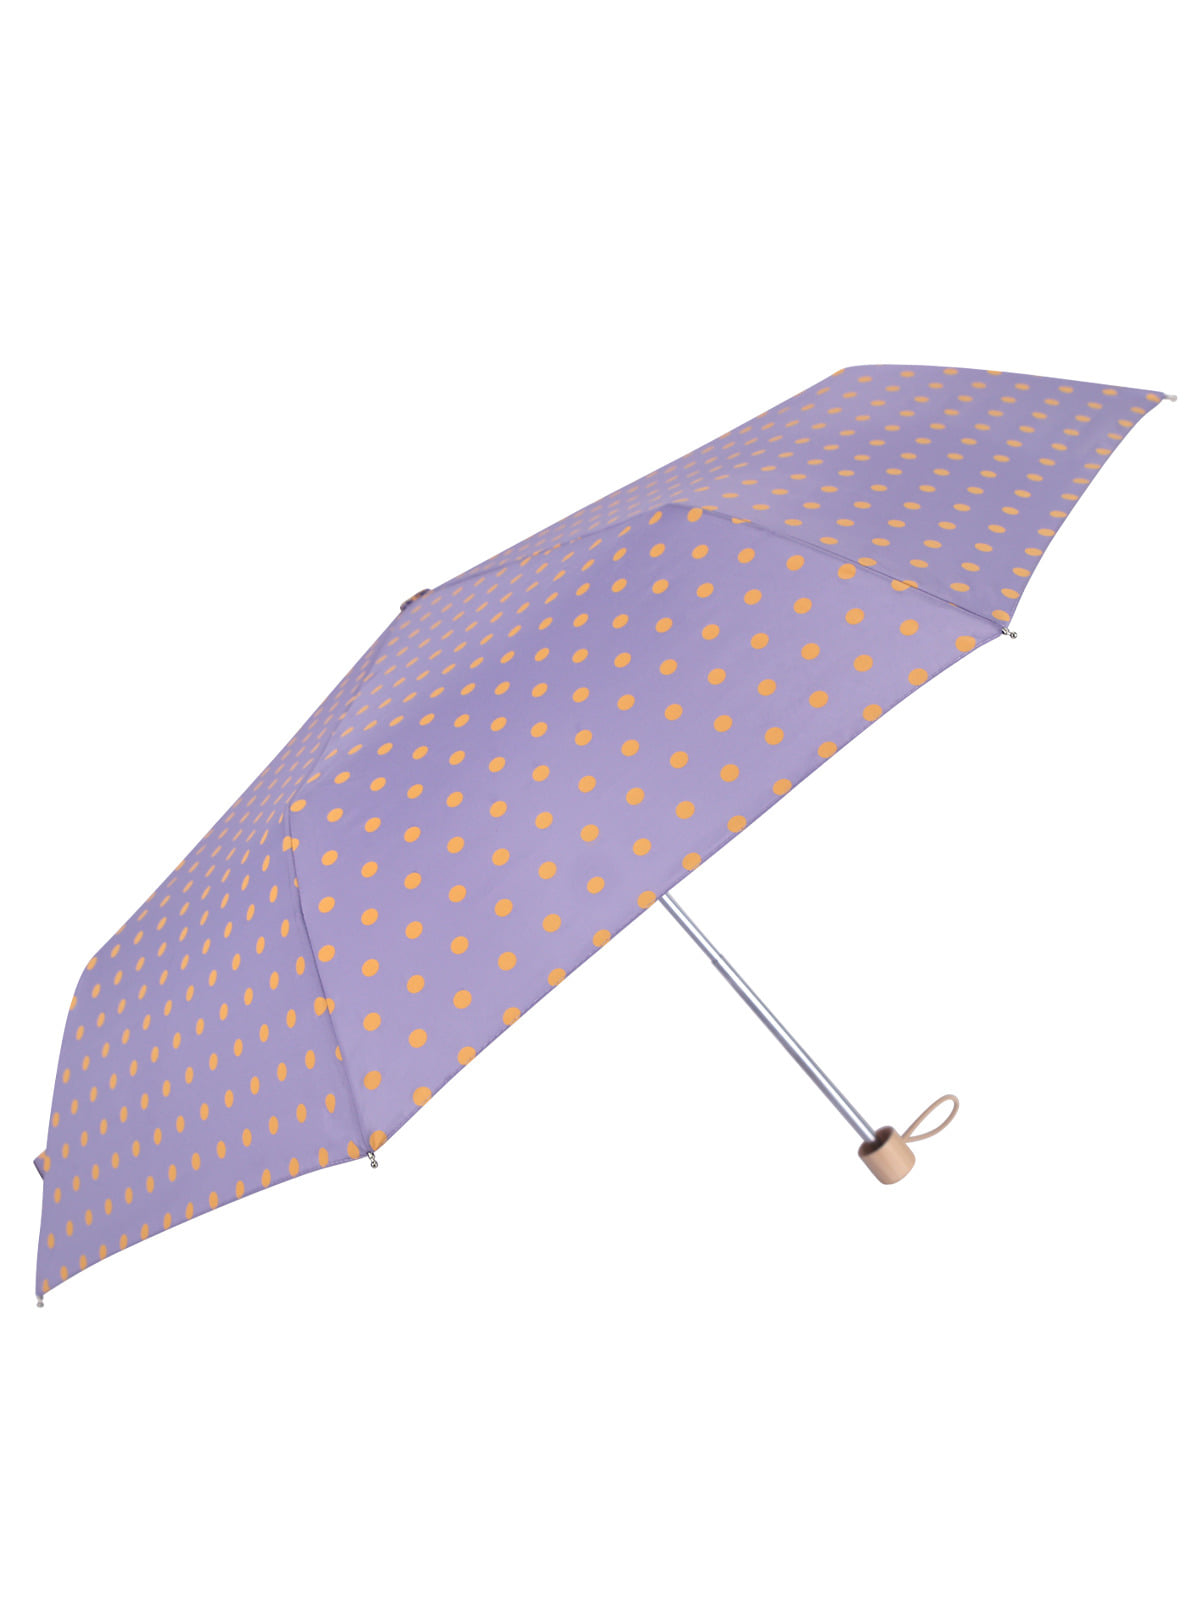 3단우산 수동 우산 가벼운 물방울 도트무늬 우산 LDDR041